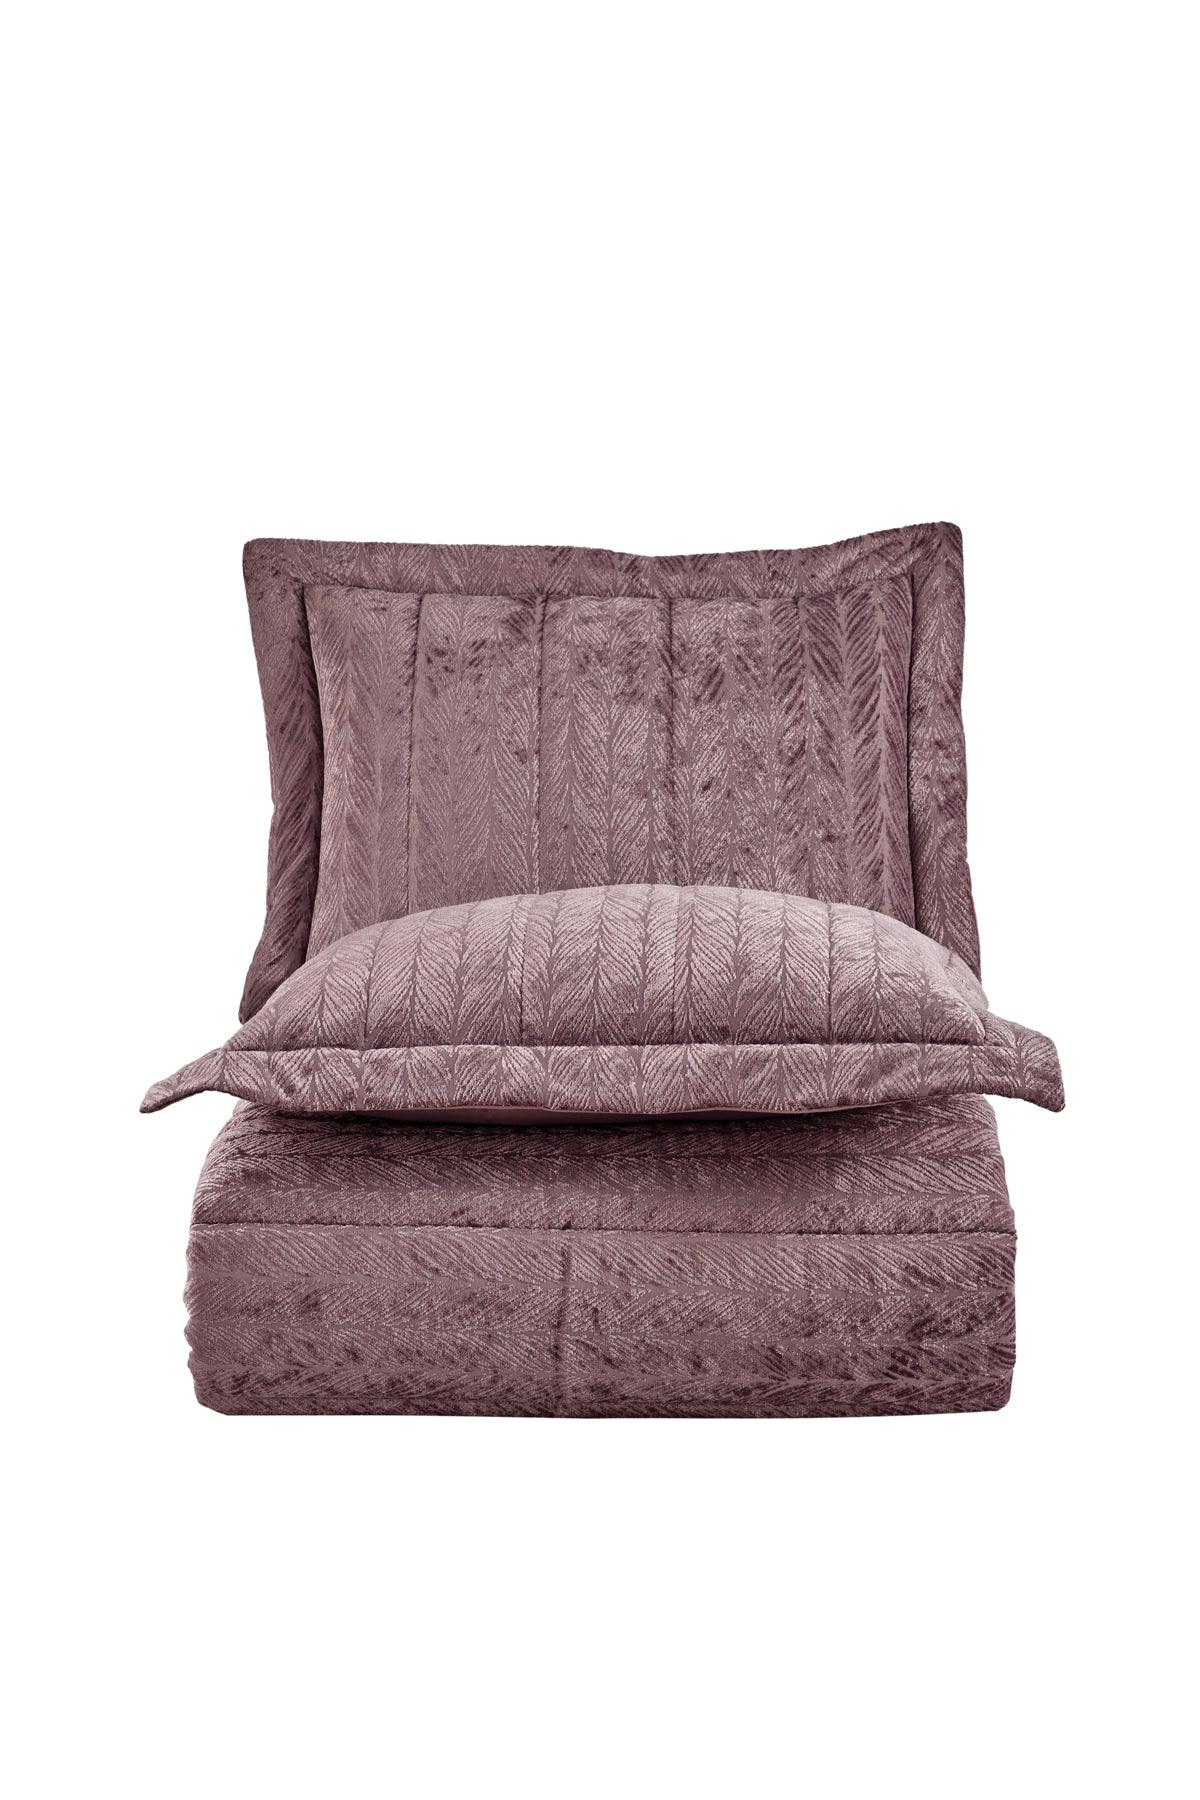 Comfort yeni nesil uykuseti - 6 parça Velvet Gülkurusu (230x220cm) - Elart Home